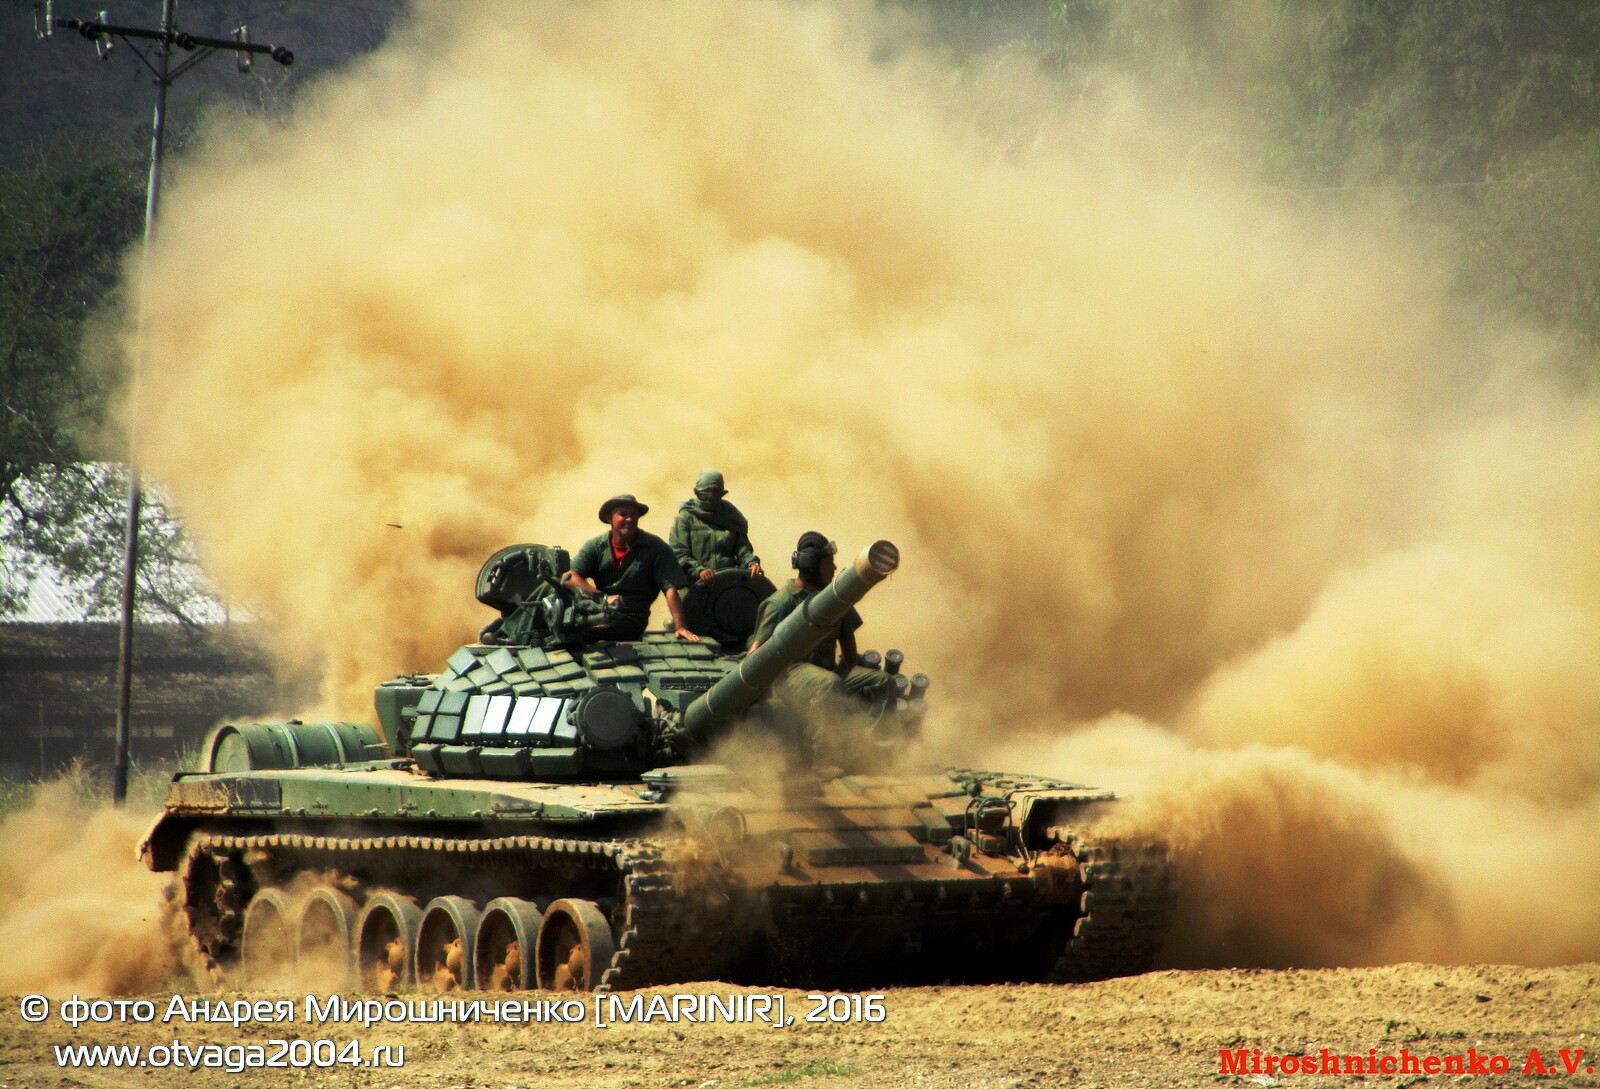 Испытания основных танков Т-72Б1 в Венесуэле - фотообзор